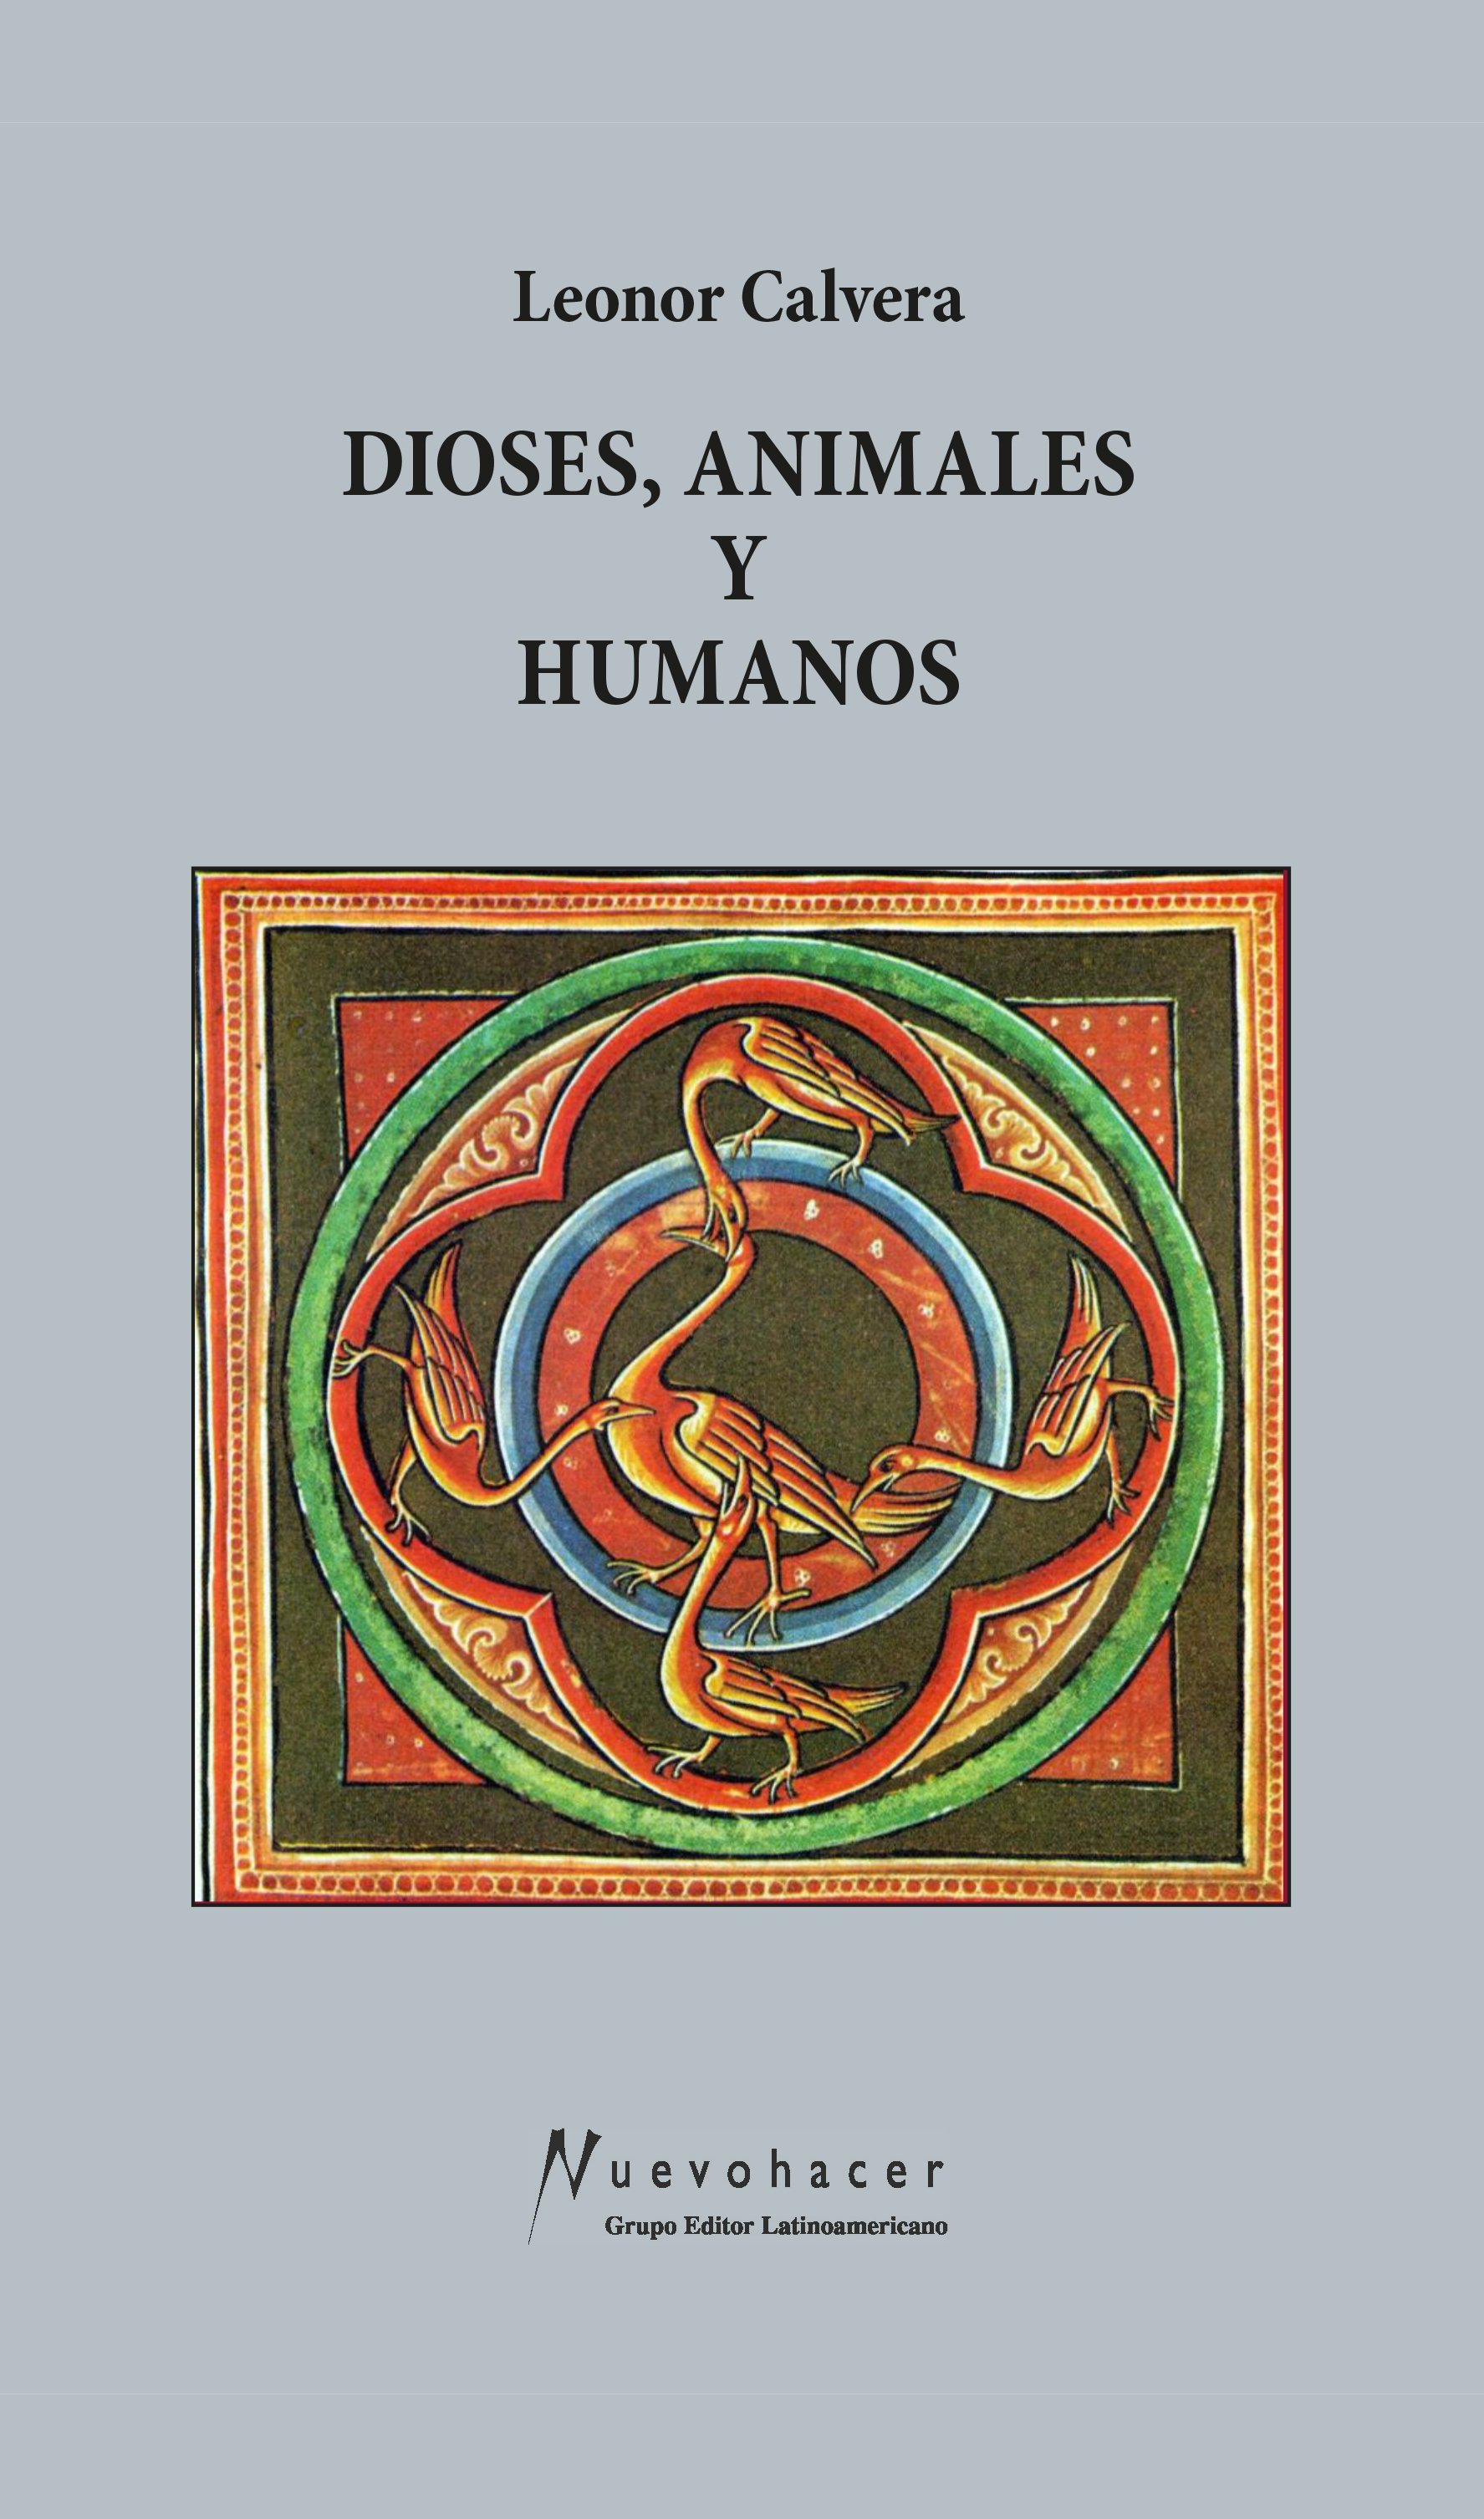 Dioses, animales y humanos (Leonor Calvera)